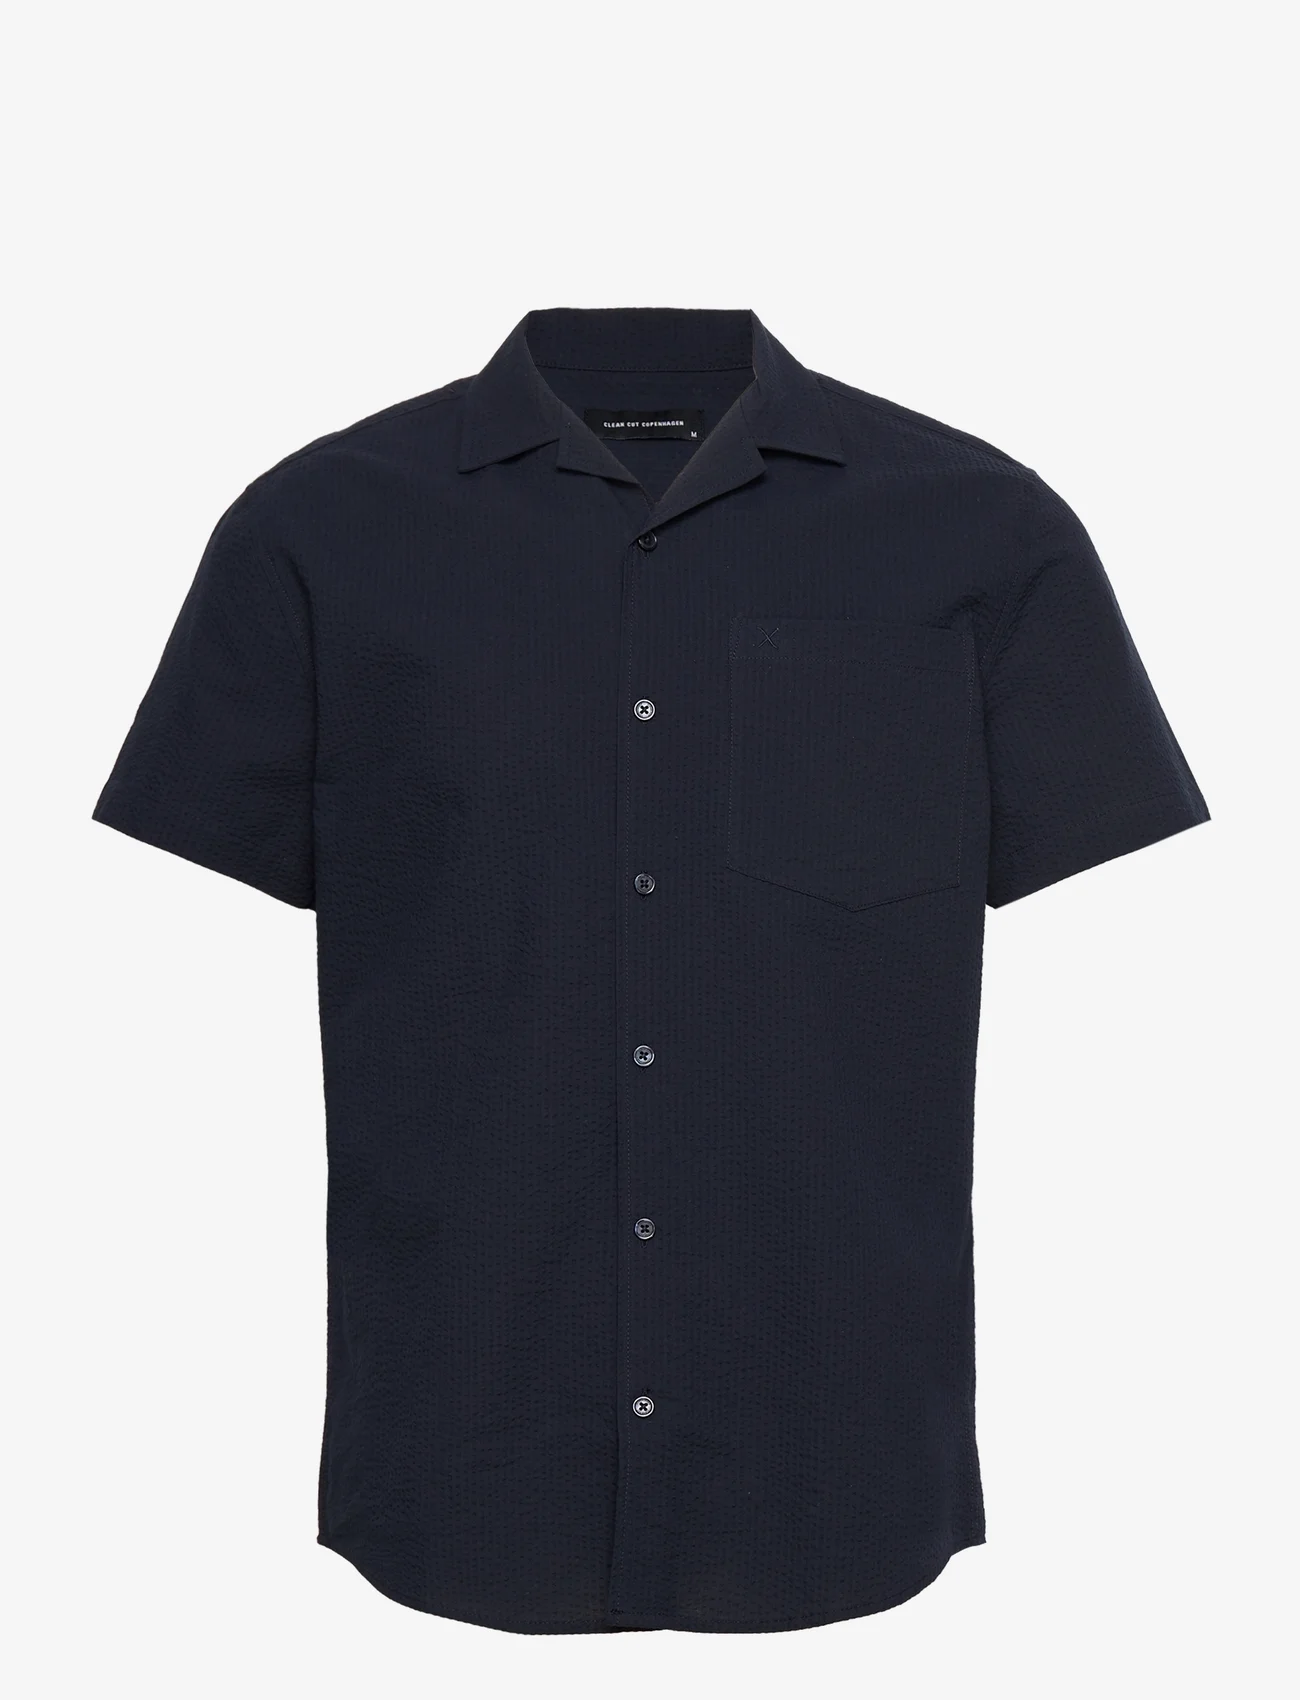 Clean Cut Copenhagen - Bowling Julius Seersucker Shirts SS - basic shirts - navy - 0